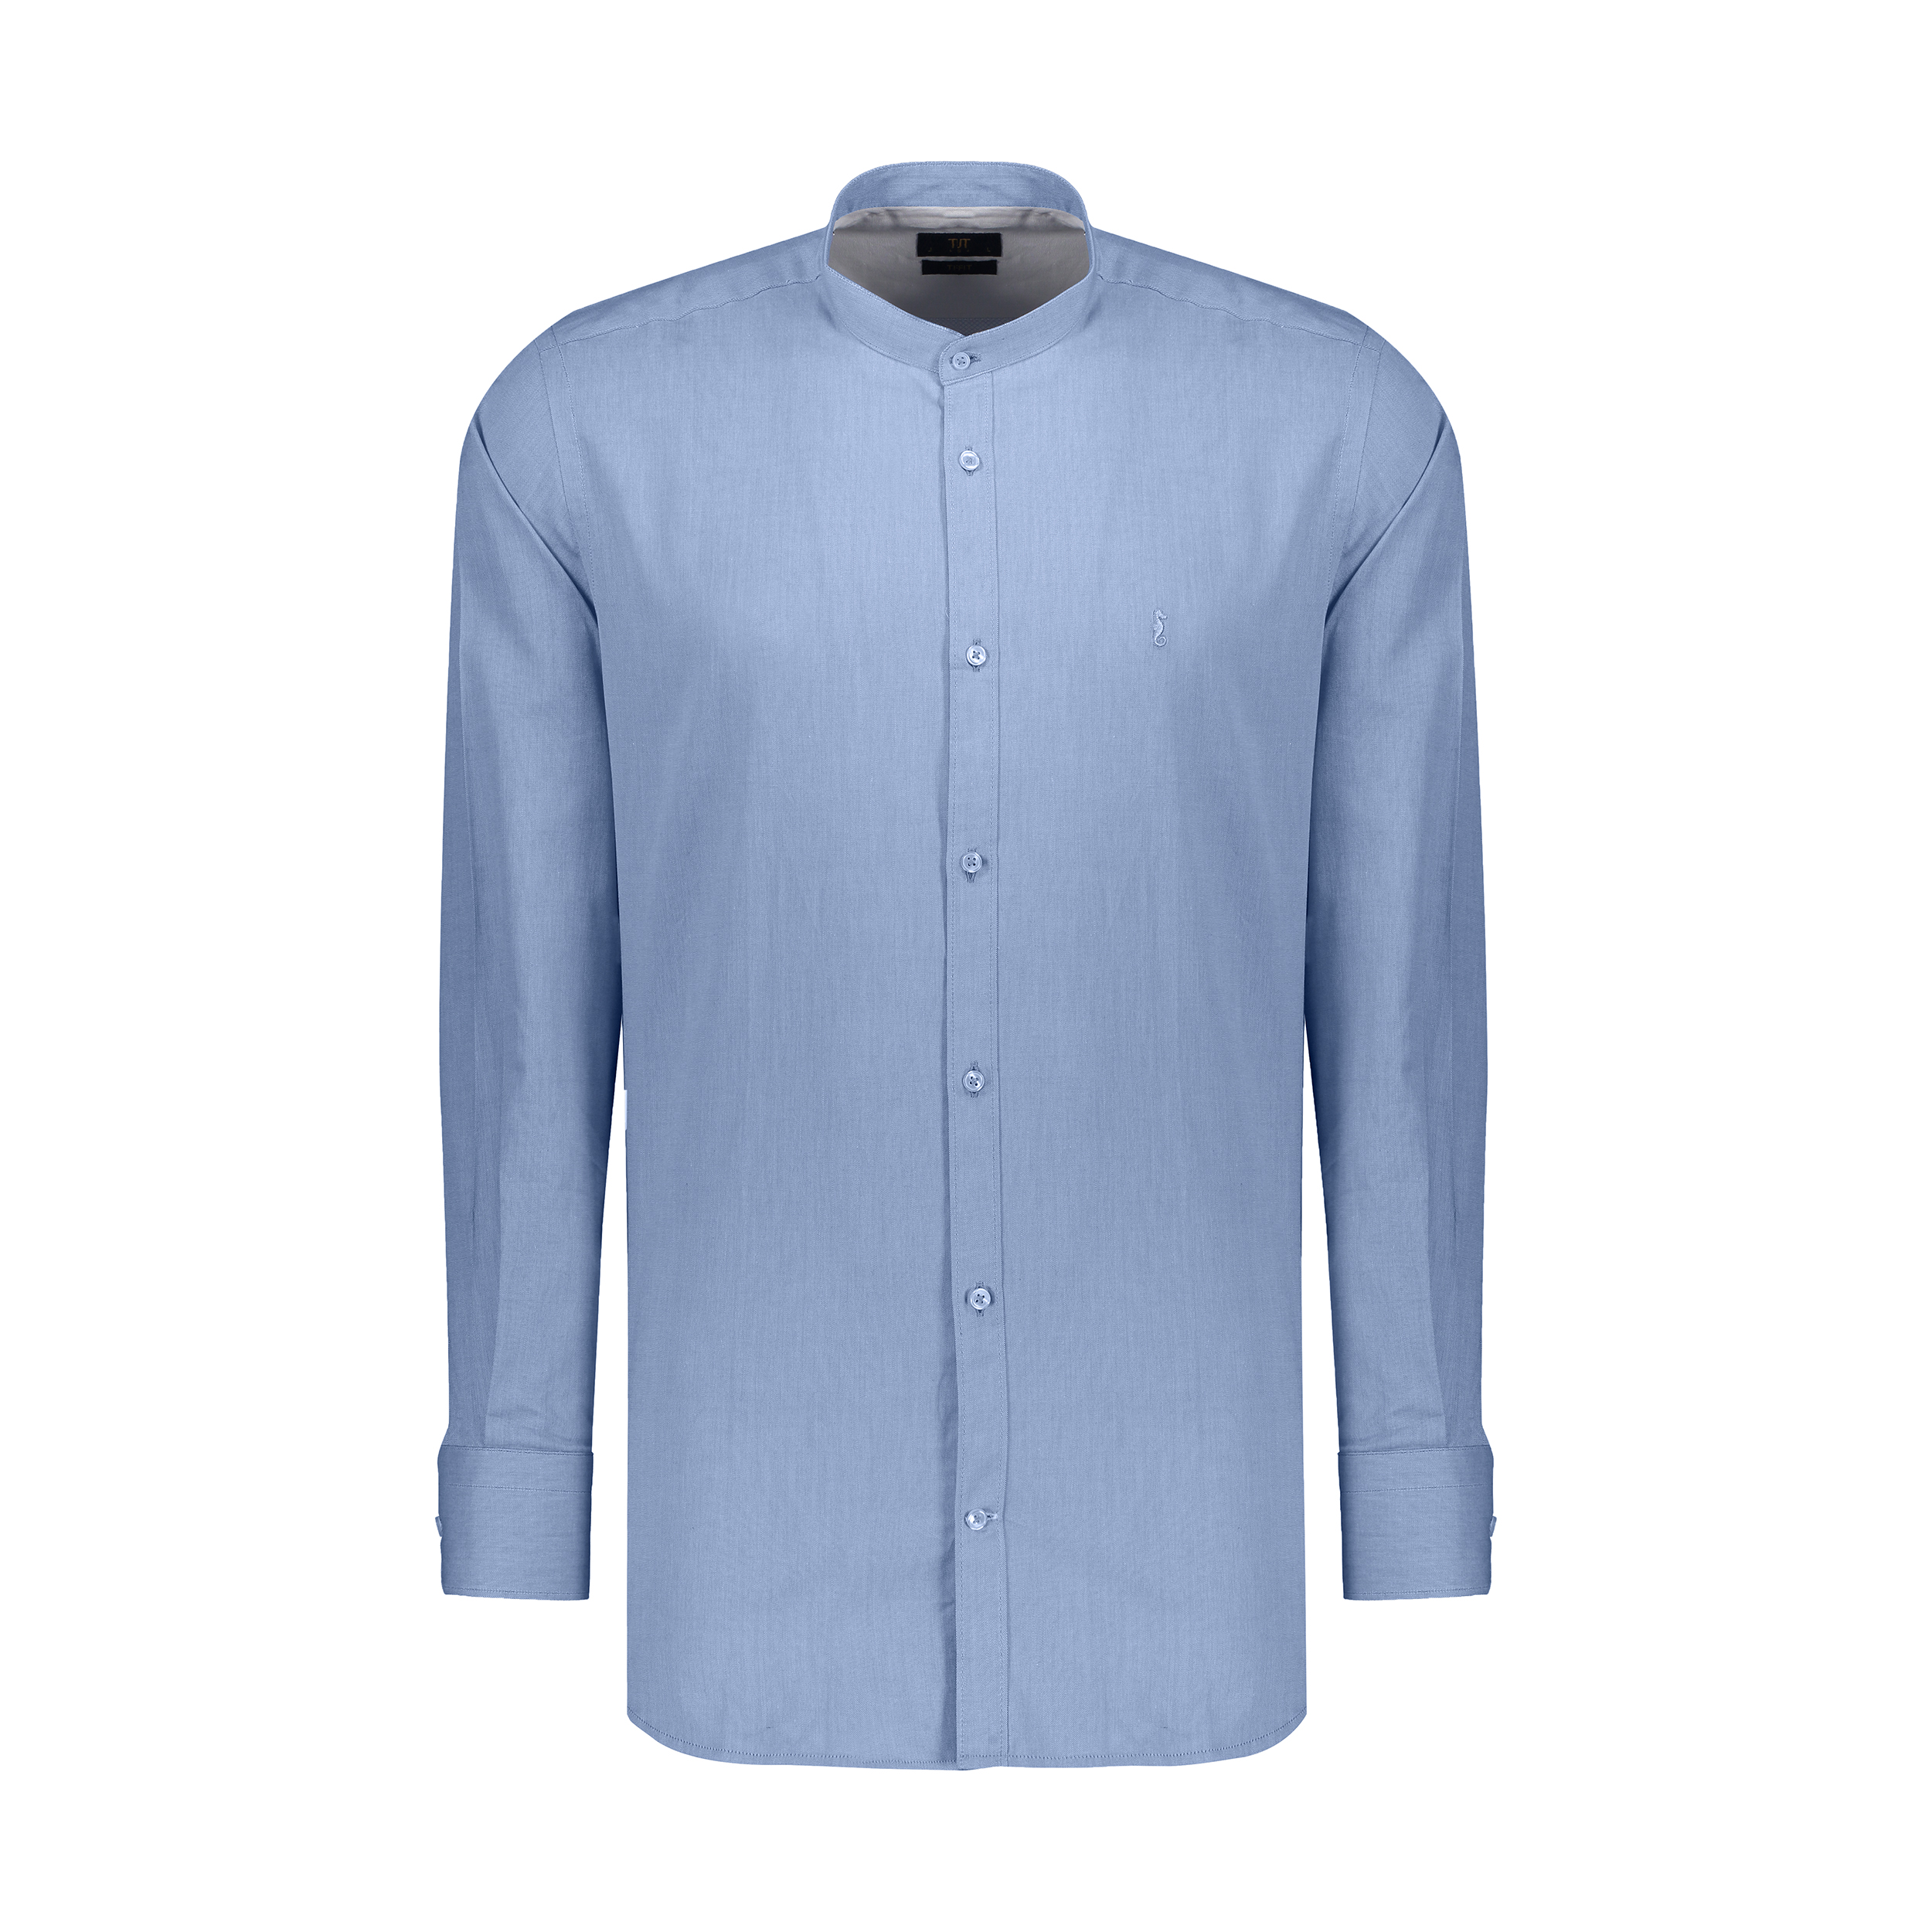 پیراهن آستین بلند مردانه ایکات مدل PST1151777 رنگ آبی